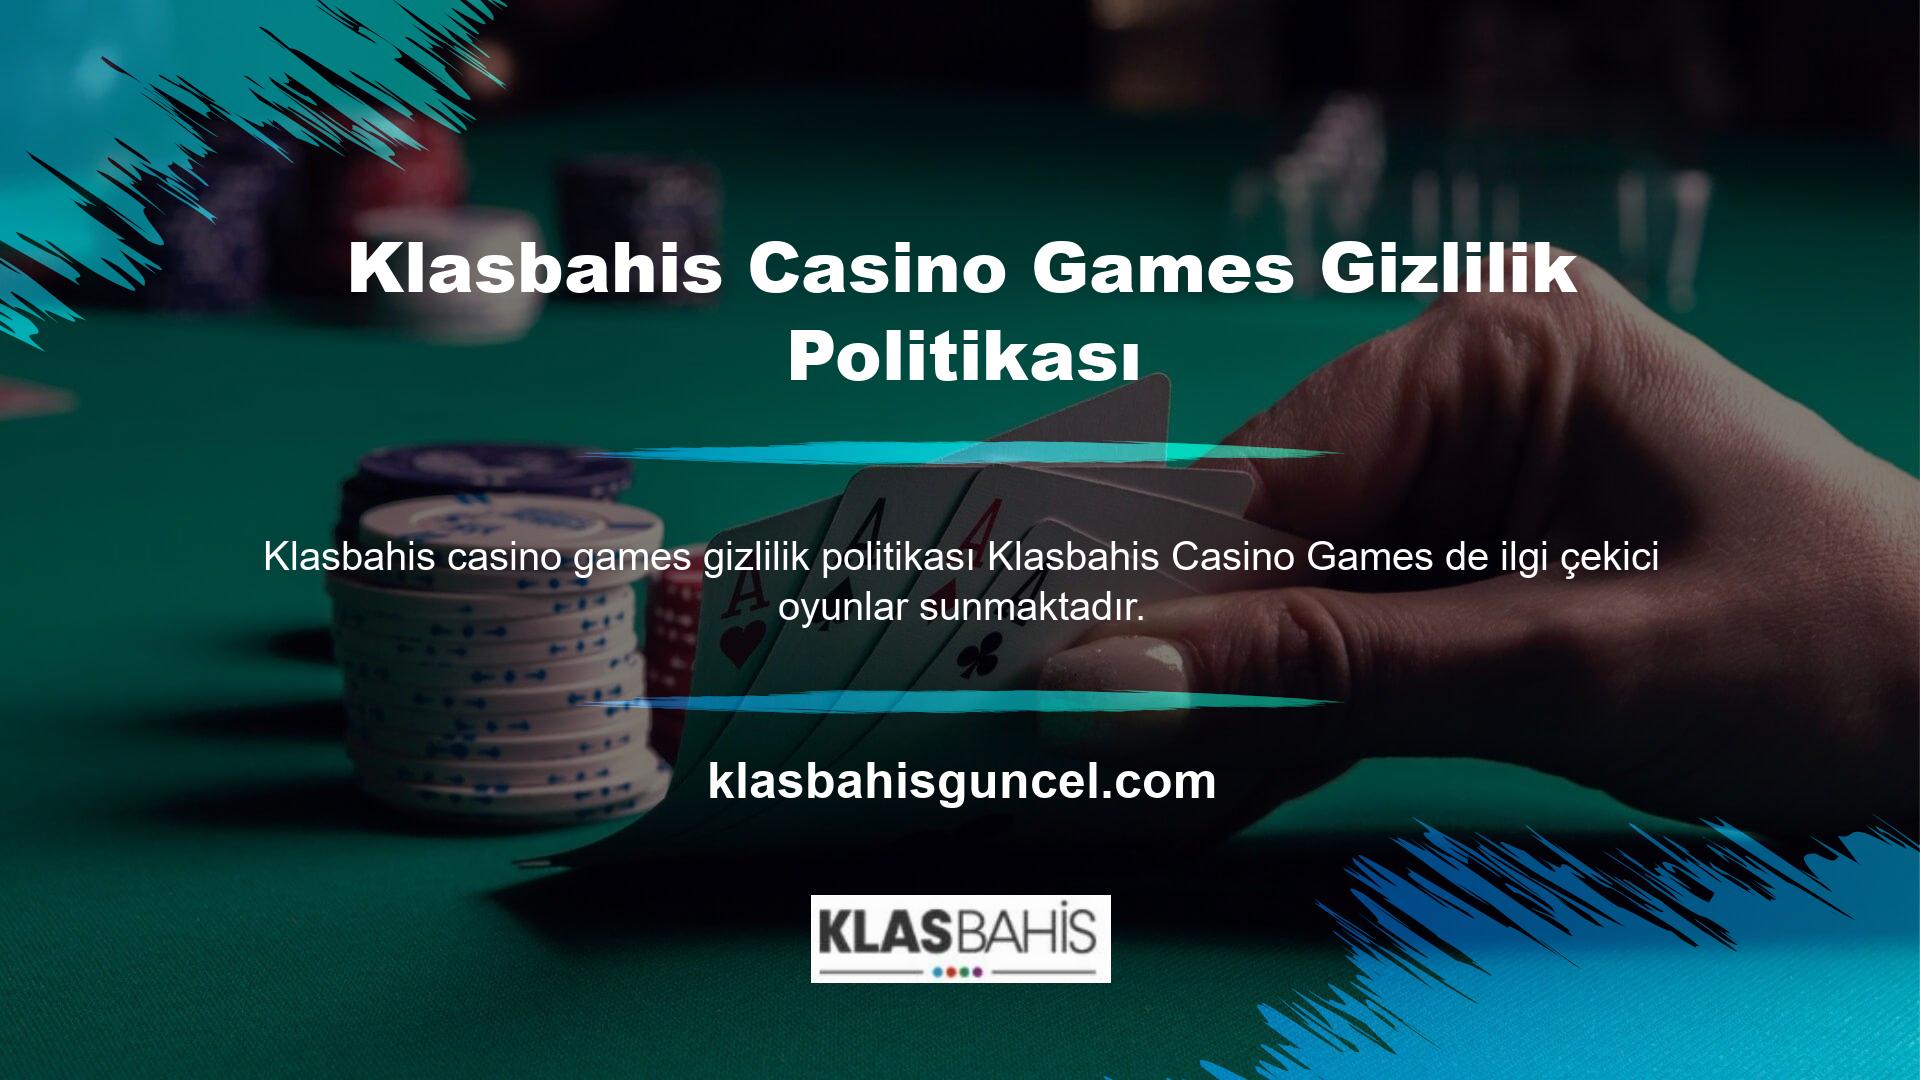 Klasbahis Casino Oyunları Gizlilik Politikasının Casino kategorisi, Slotlar, Masa Oyunları, Video Poker, Jackpot & Scratch, Casino'yu içerir ve ayrıca Dart ve Tavla oynayabilirsiniz